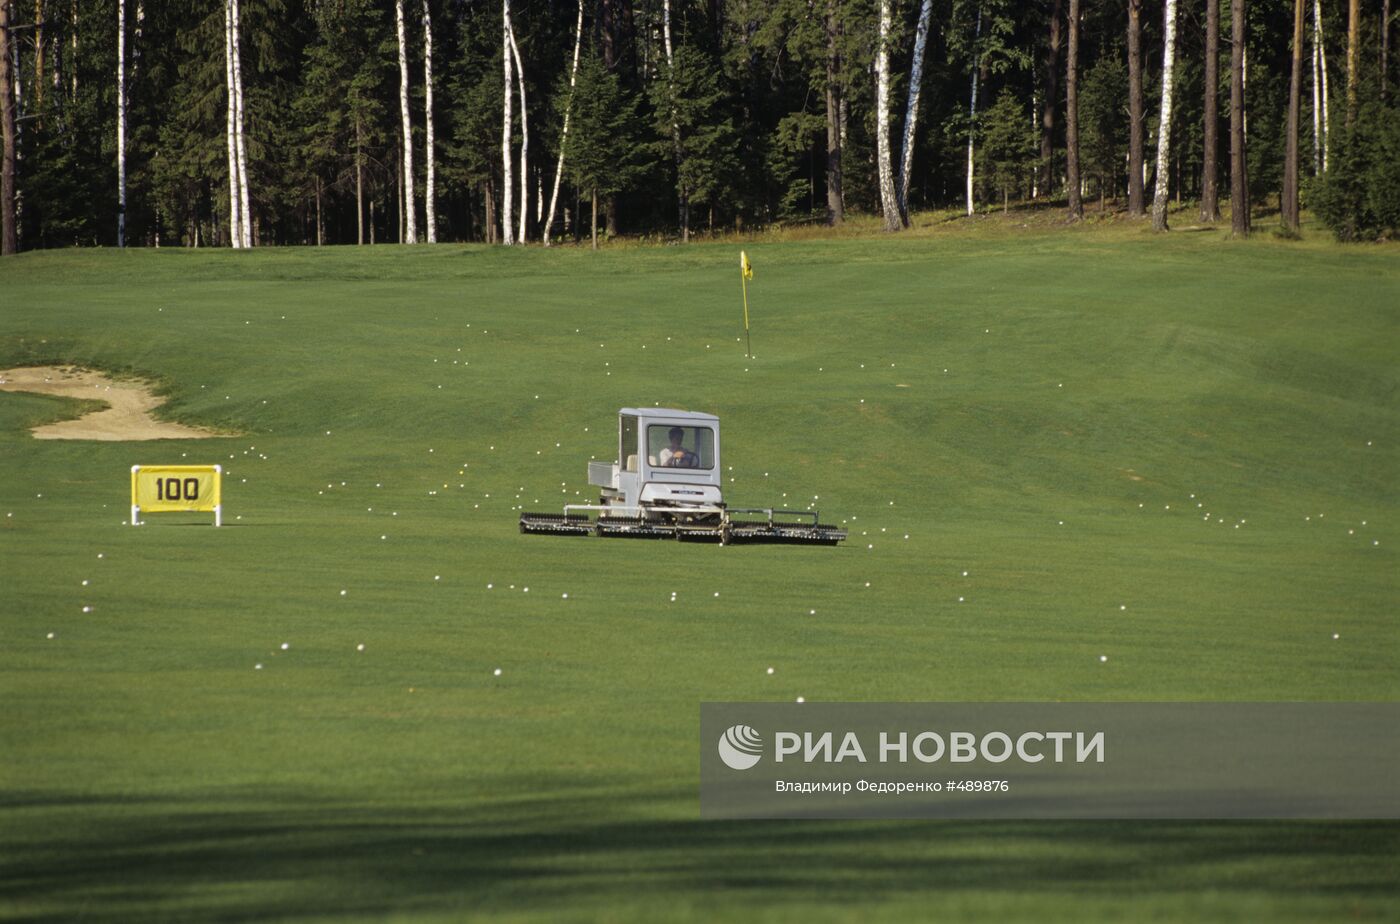 Профессиональное поле для гольфа